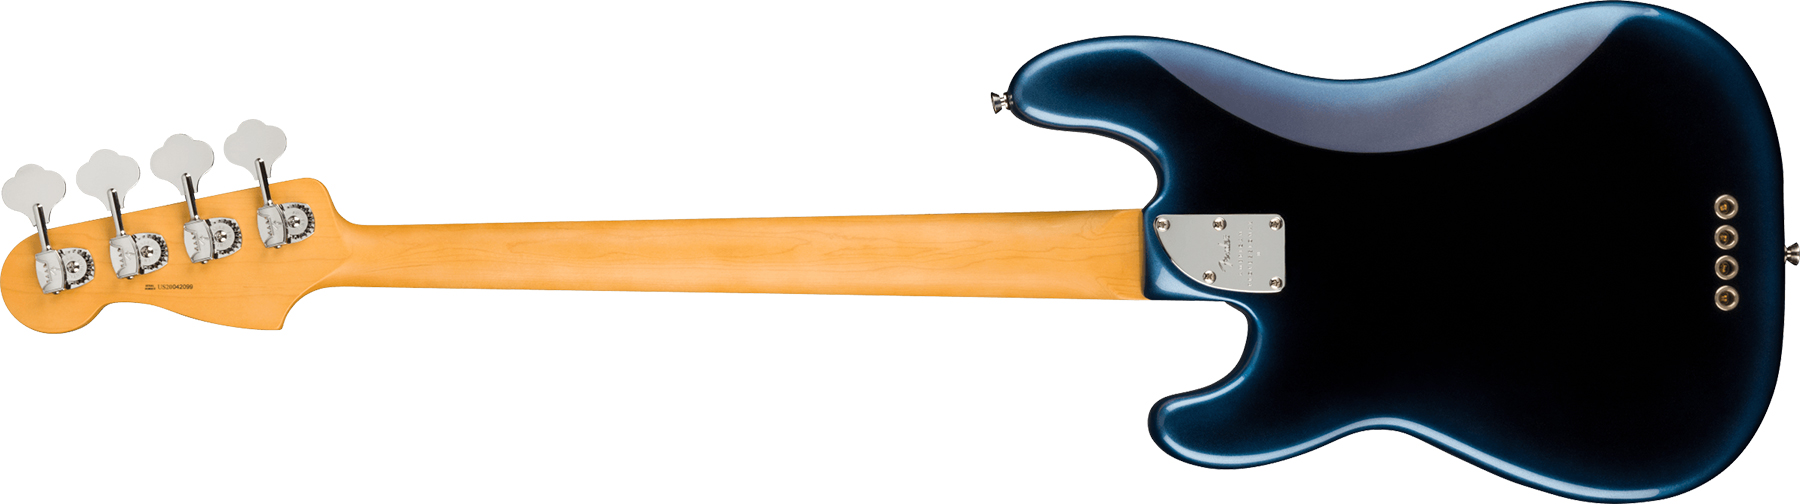 Fender Precision Bass American Professional Ii Usa Rw - Dark Night - Bajo eléctrico de cuerpo sólido - Variation 1